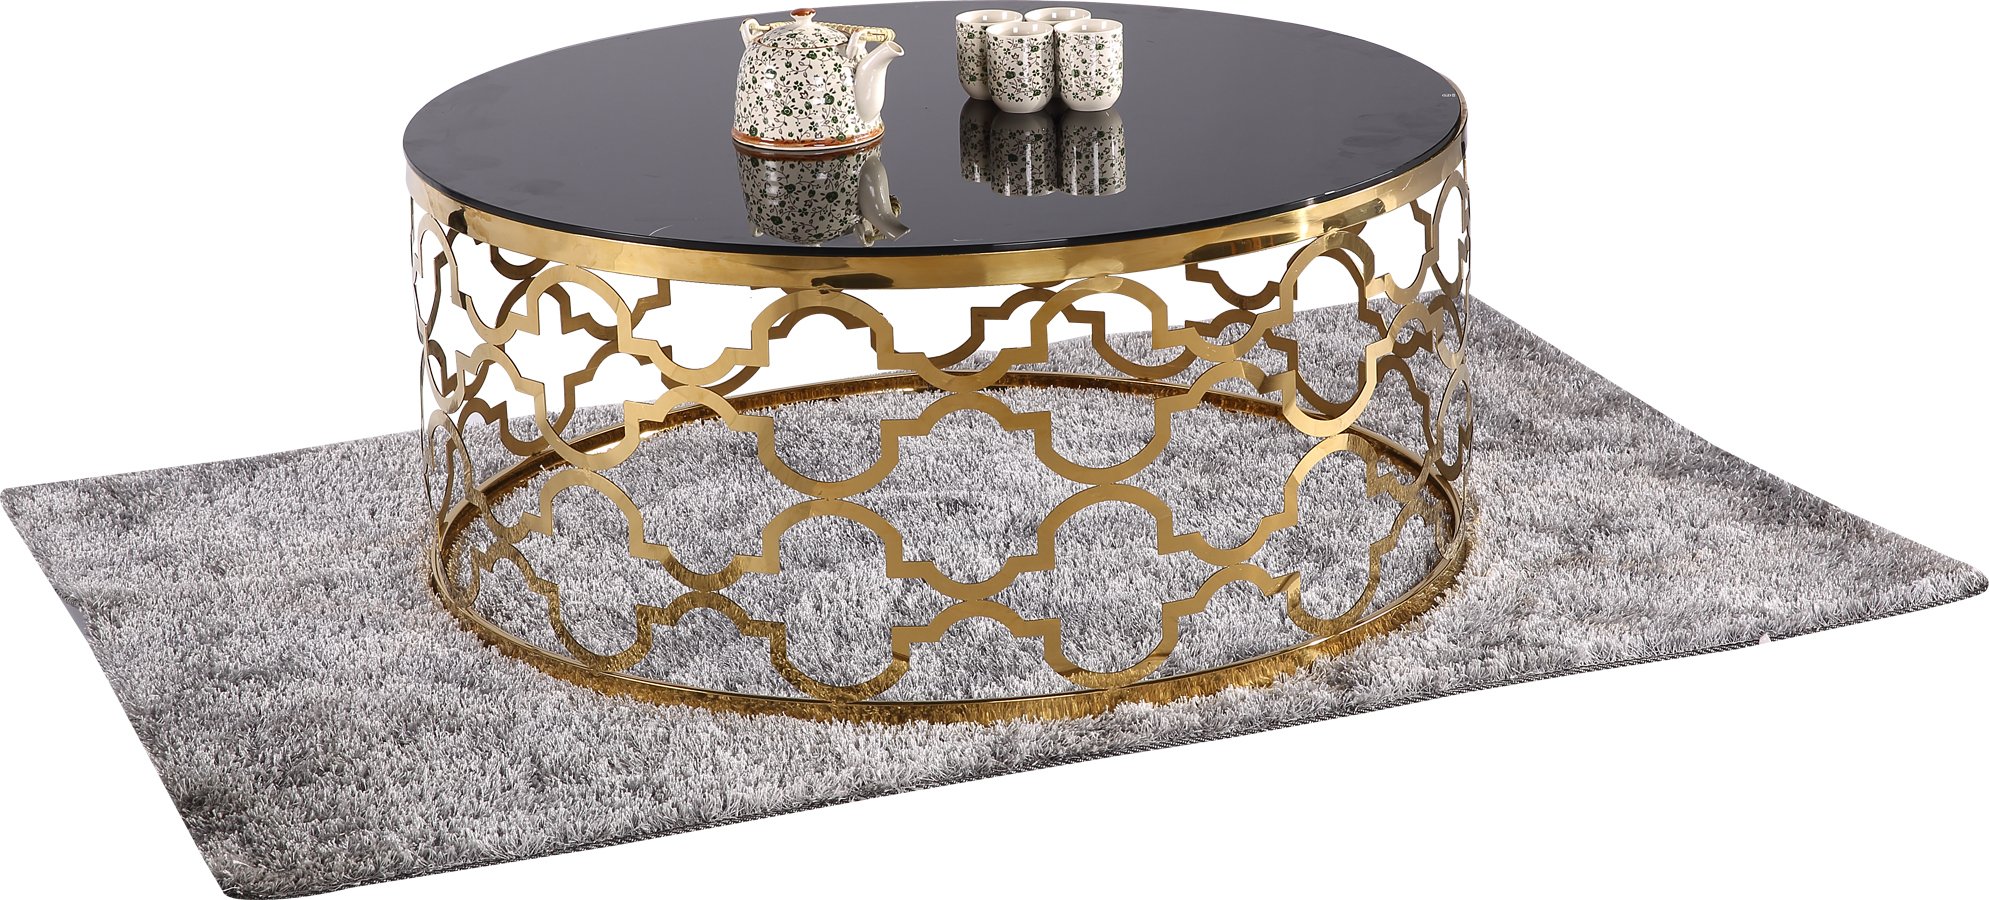 Кофейный столик CLANDAY Lino small Gold Drum Side Table Gold